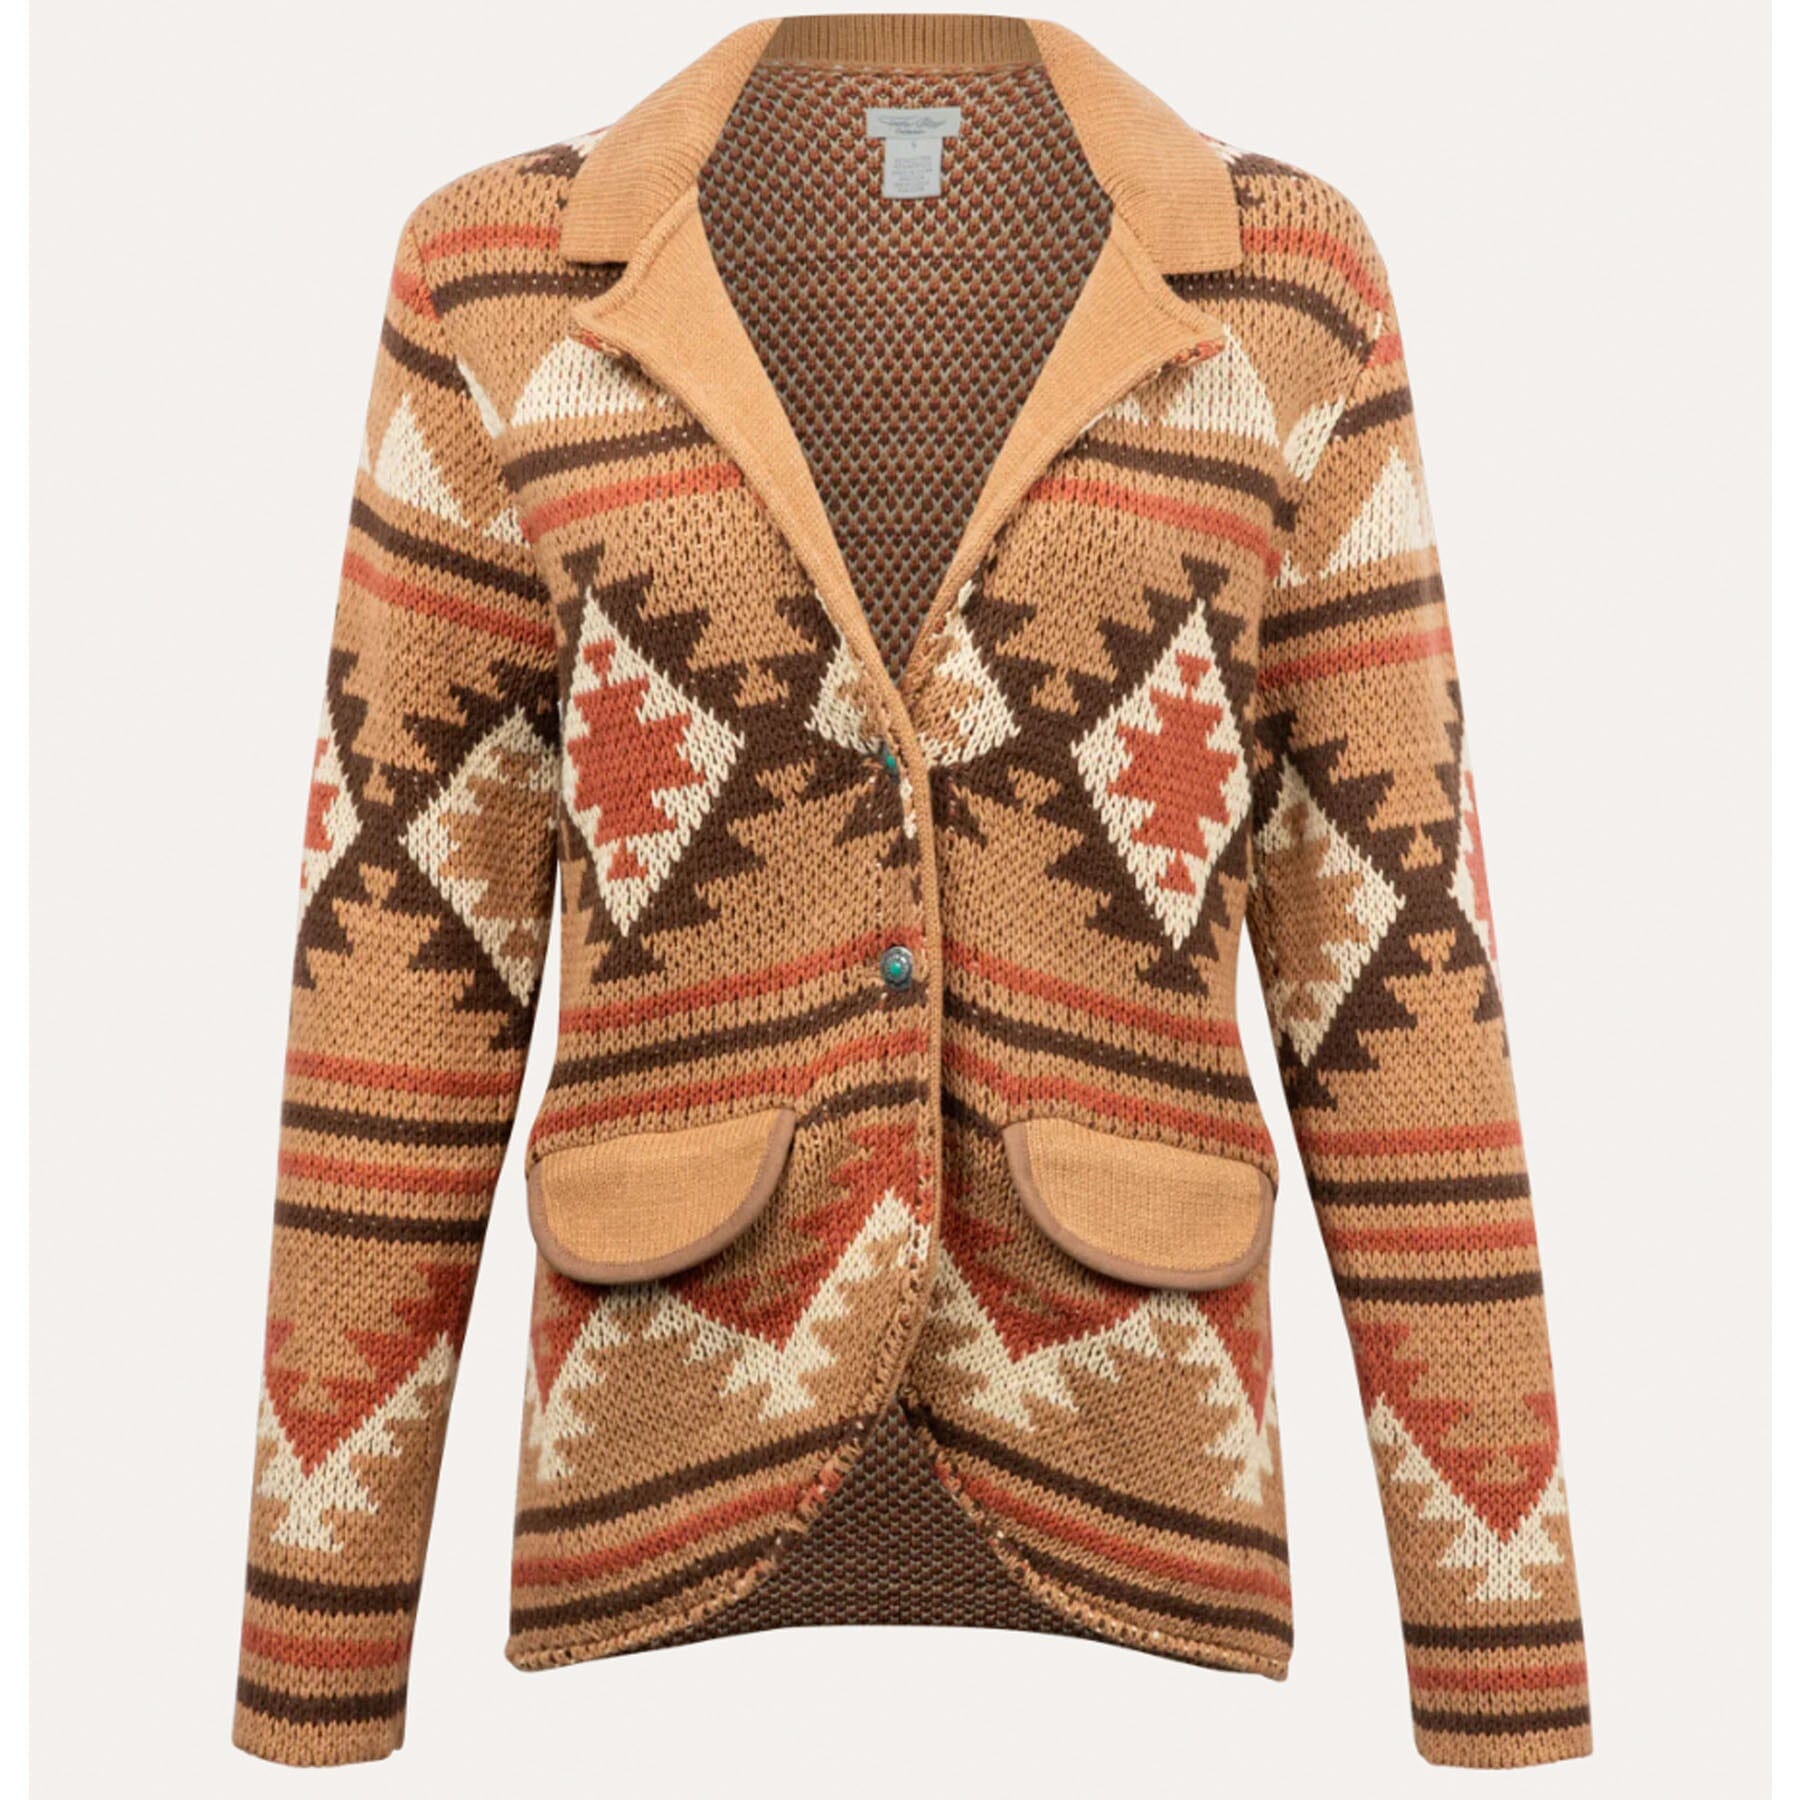 Felina Blazer Sweater Blazer - Tasha Polizzi - WTP5